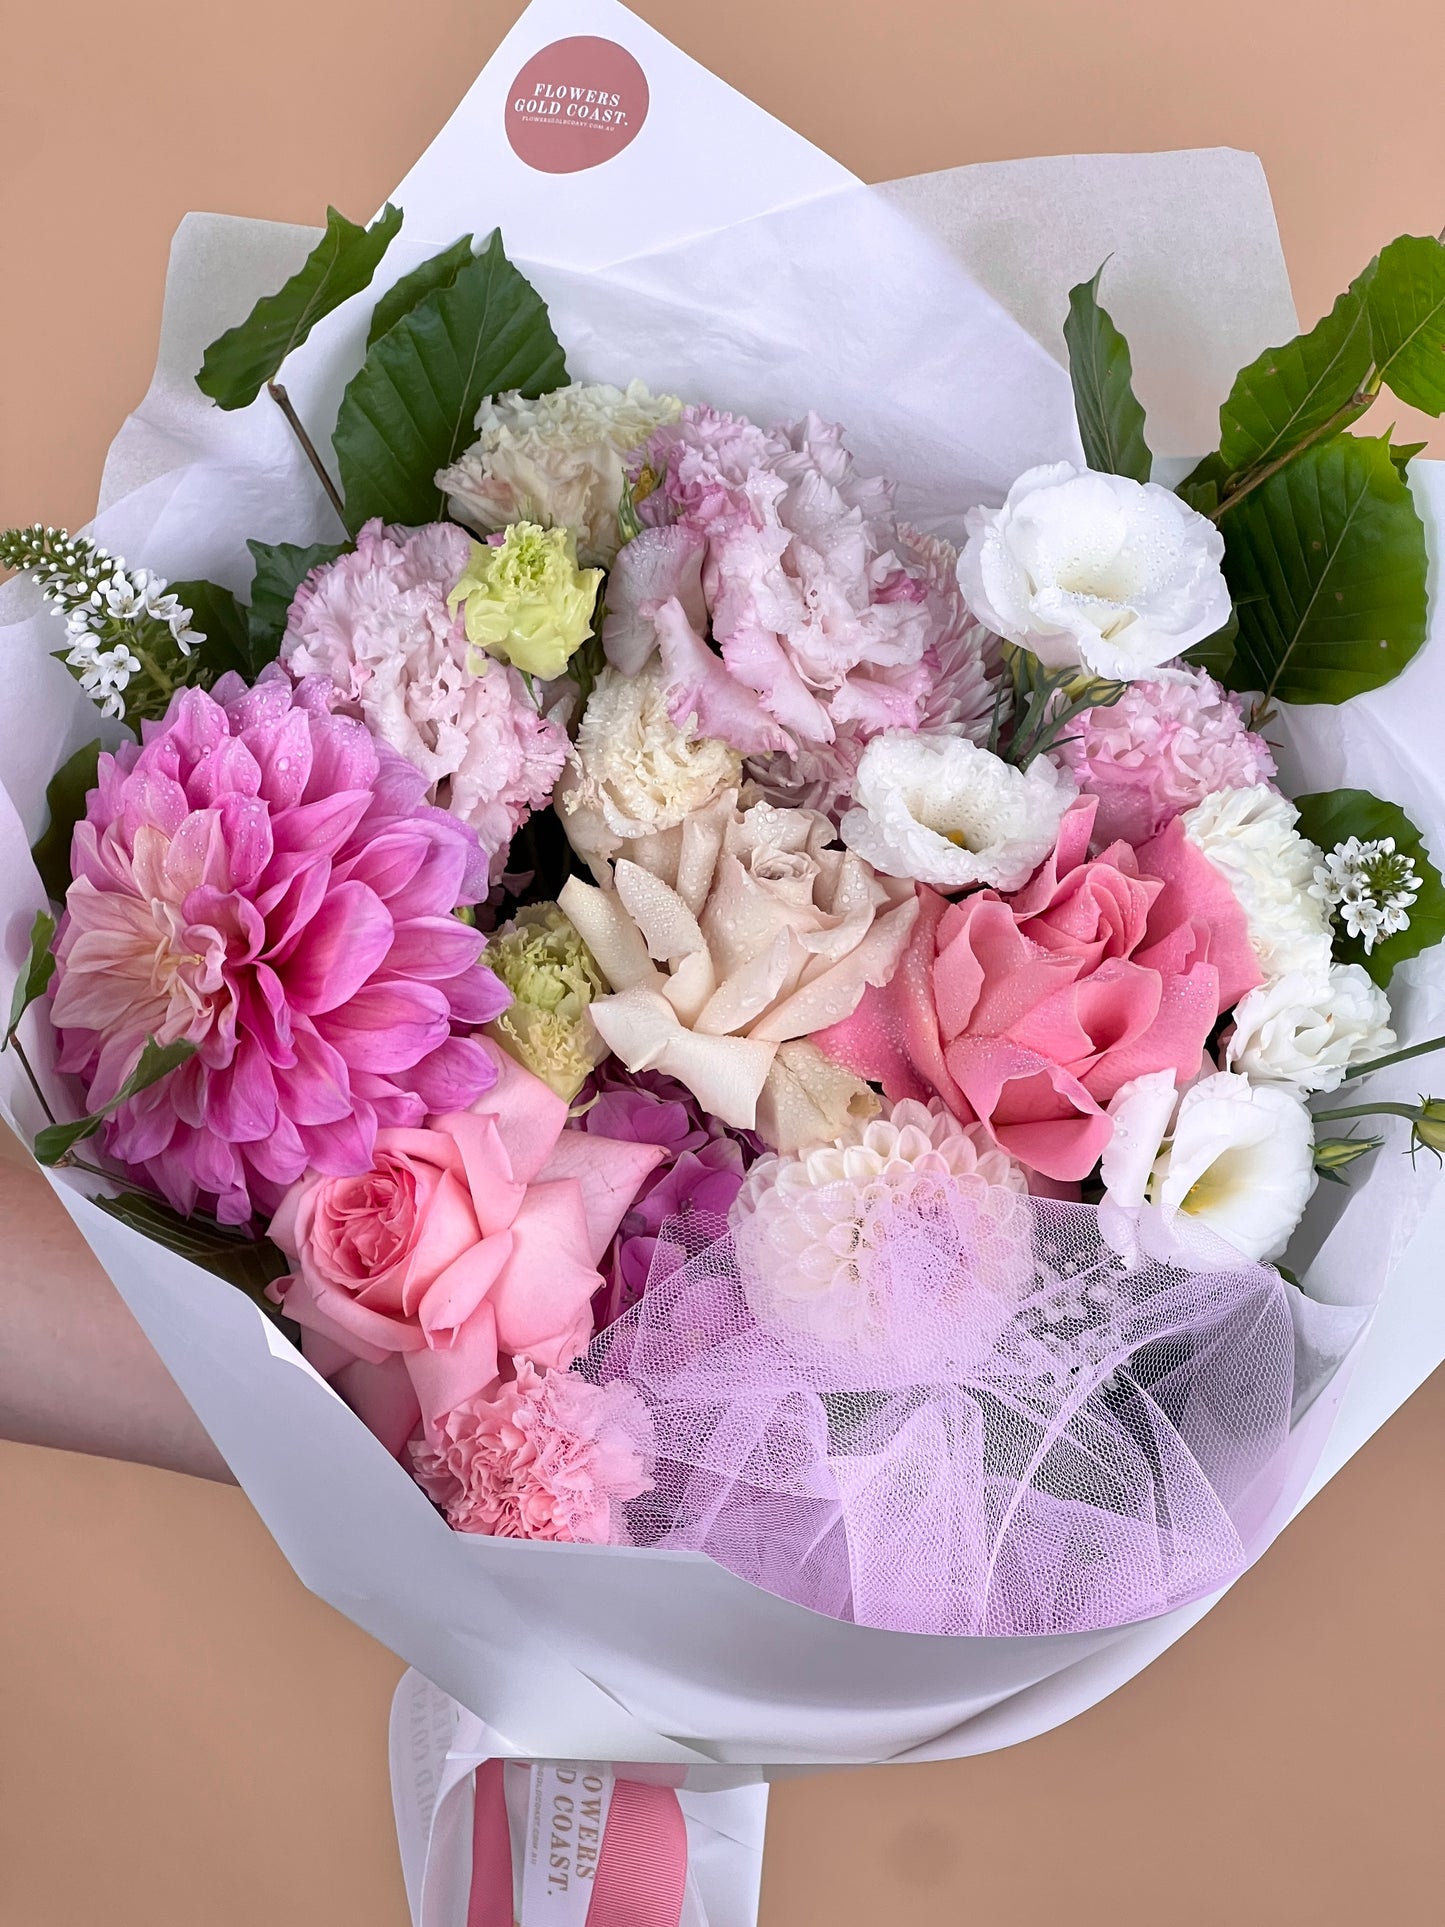 Soft Romance-Flower-Delivery-Gold-Coast-Florist-Flowers Gold Coast-Petite-https://www.flowersgoldcoast.com.au-best-florist